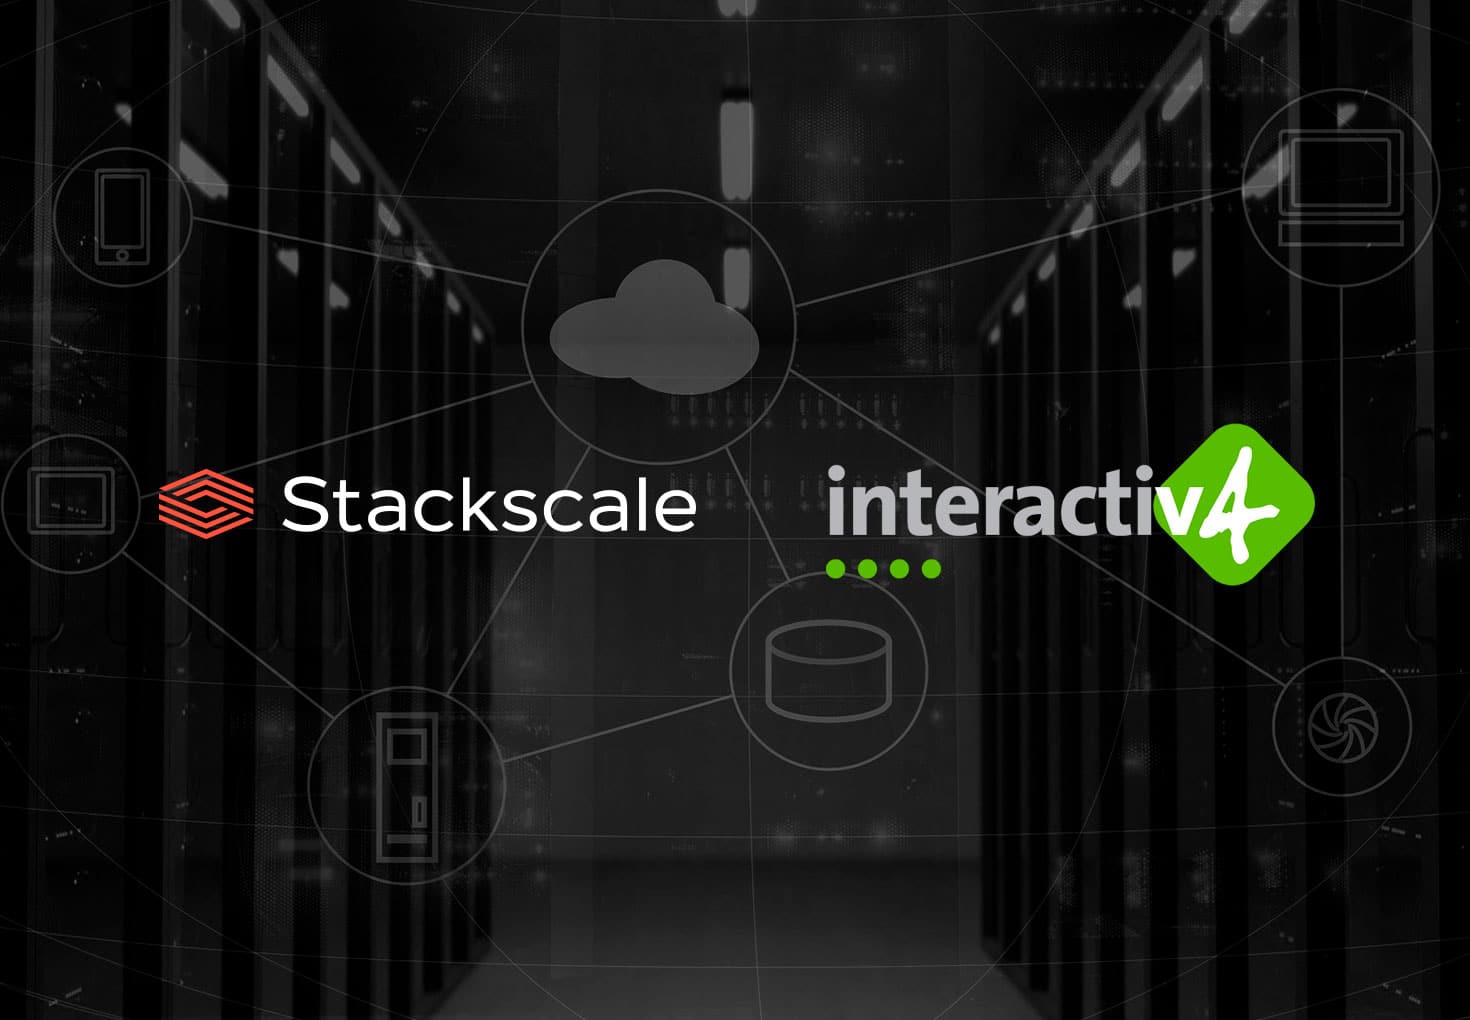 Acuerdo de partnership de Stackscale e Interactiv4